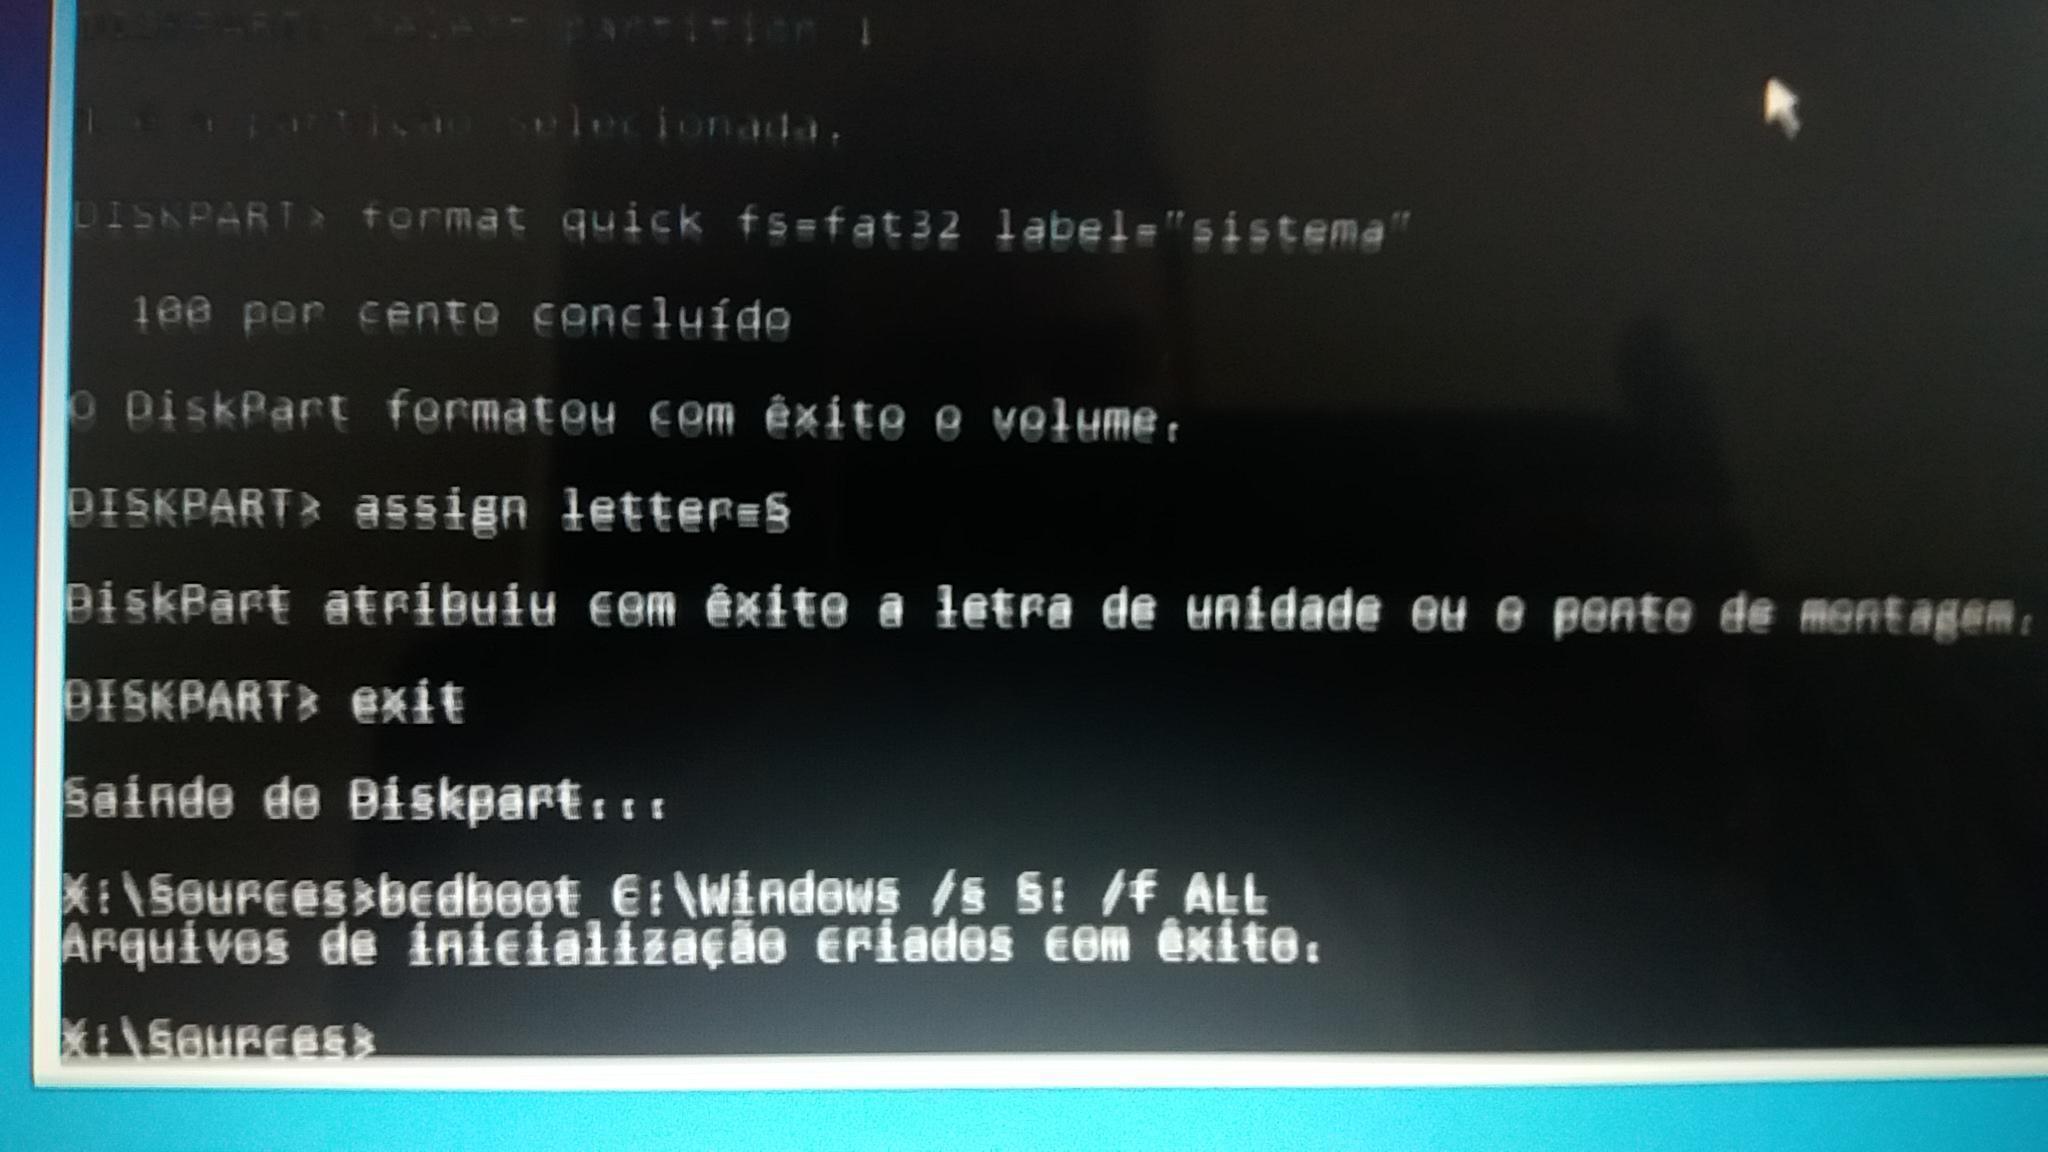 RTC em português  on X: ÚLTIMAS NOTÍCIAS: O Roblox encerrará oficialmente  seu suporte para computadores com sistemas Windows de 32-bits na  segunda-feira, dia 17 de Abril. 🖥️ 🚫 Créditos + 📸: @